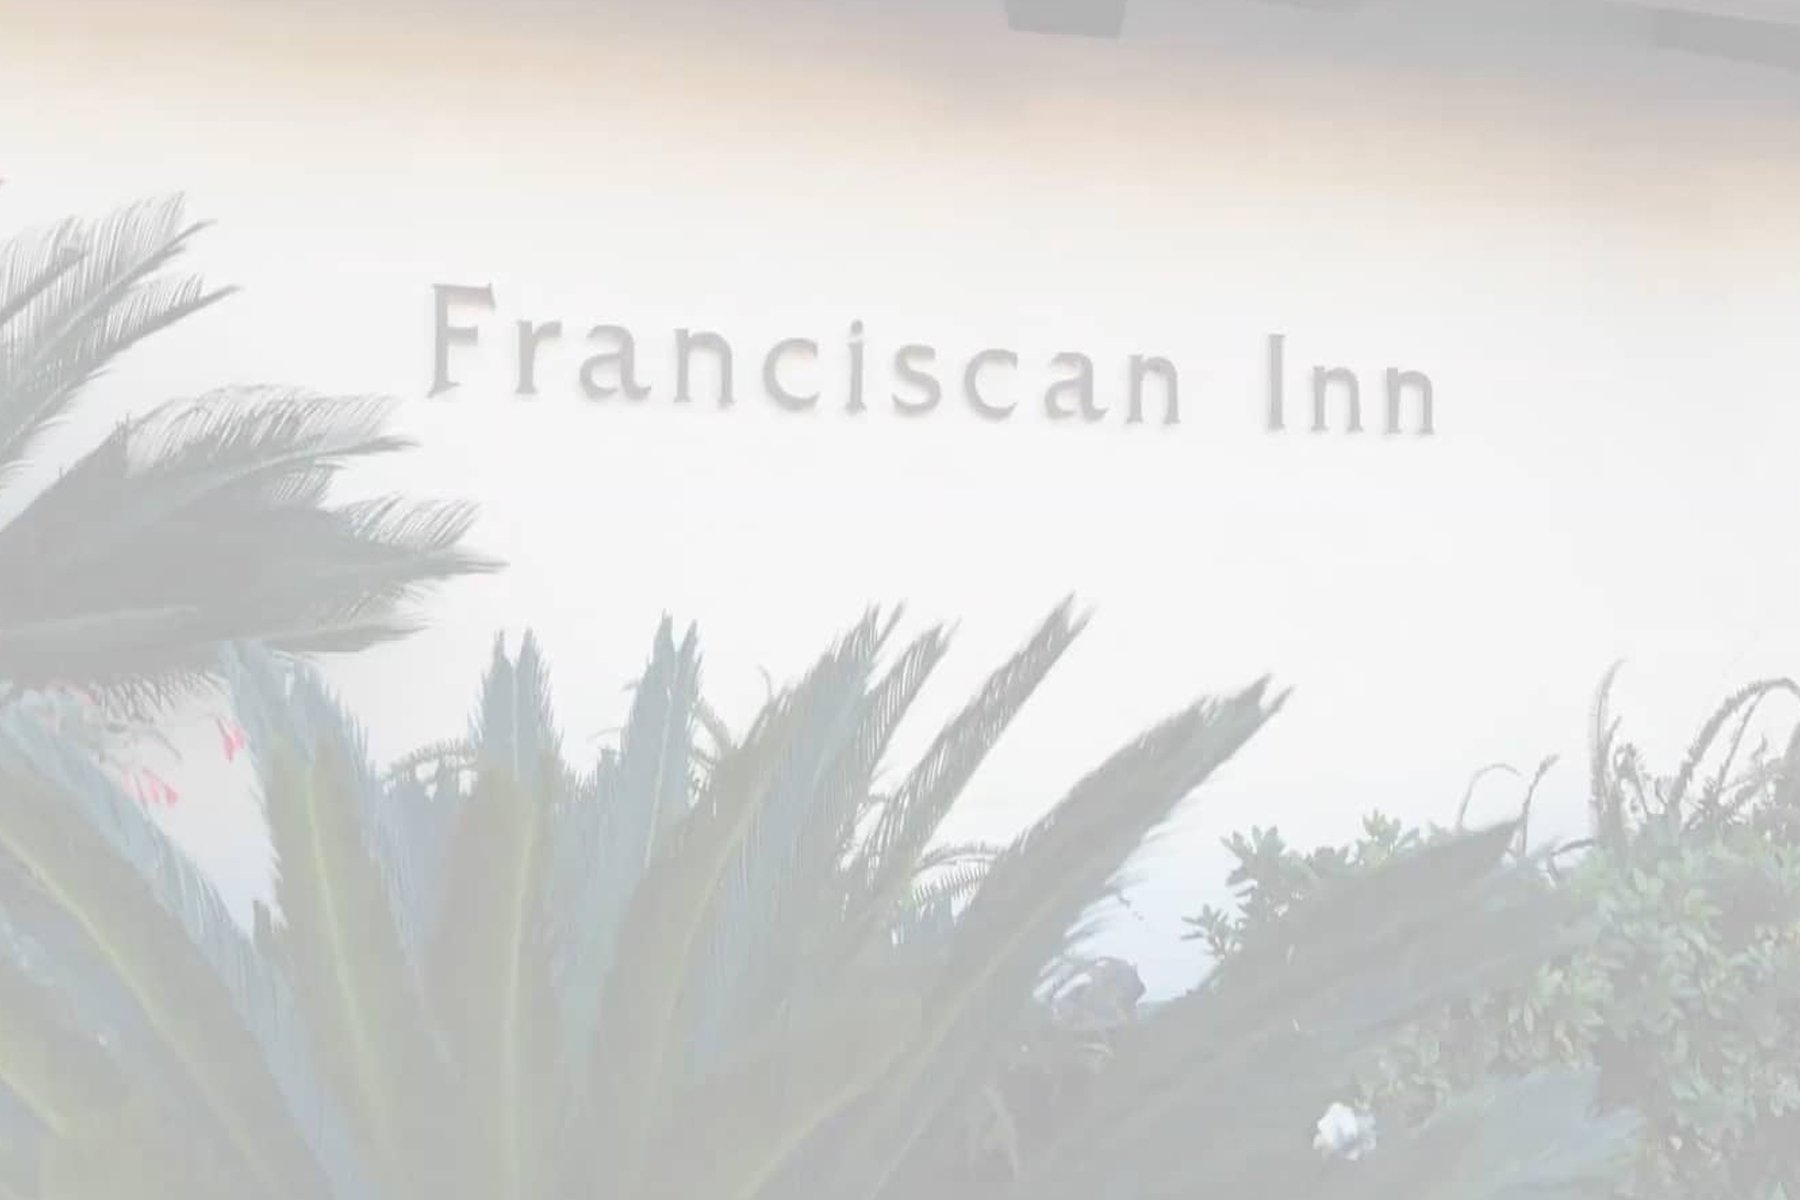 The Franciscan Hotel, Santa Barbara